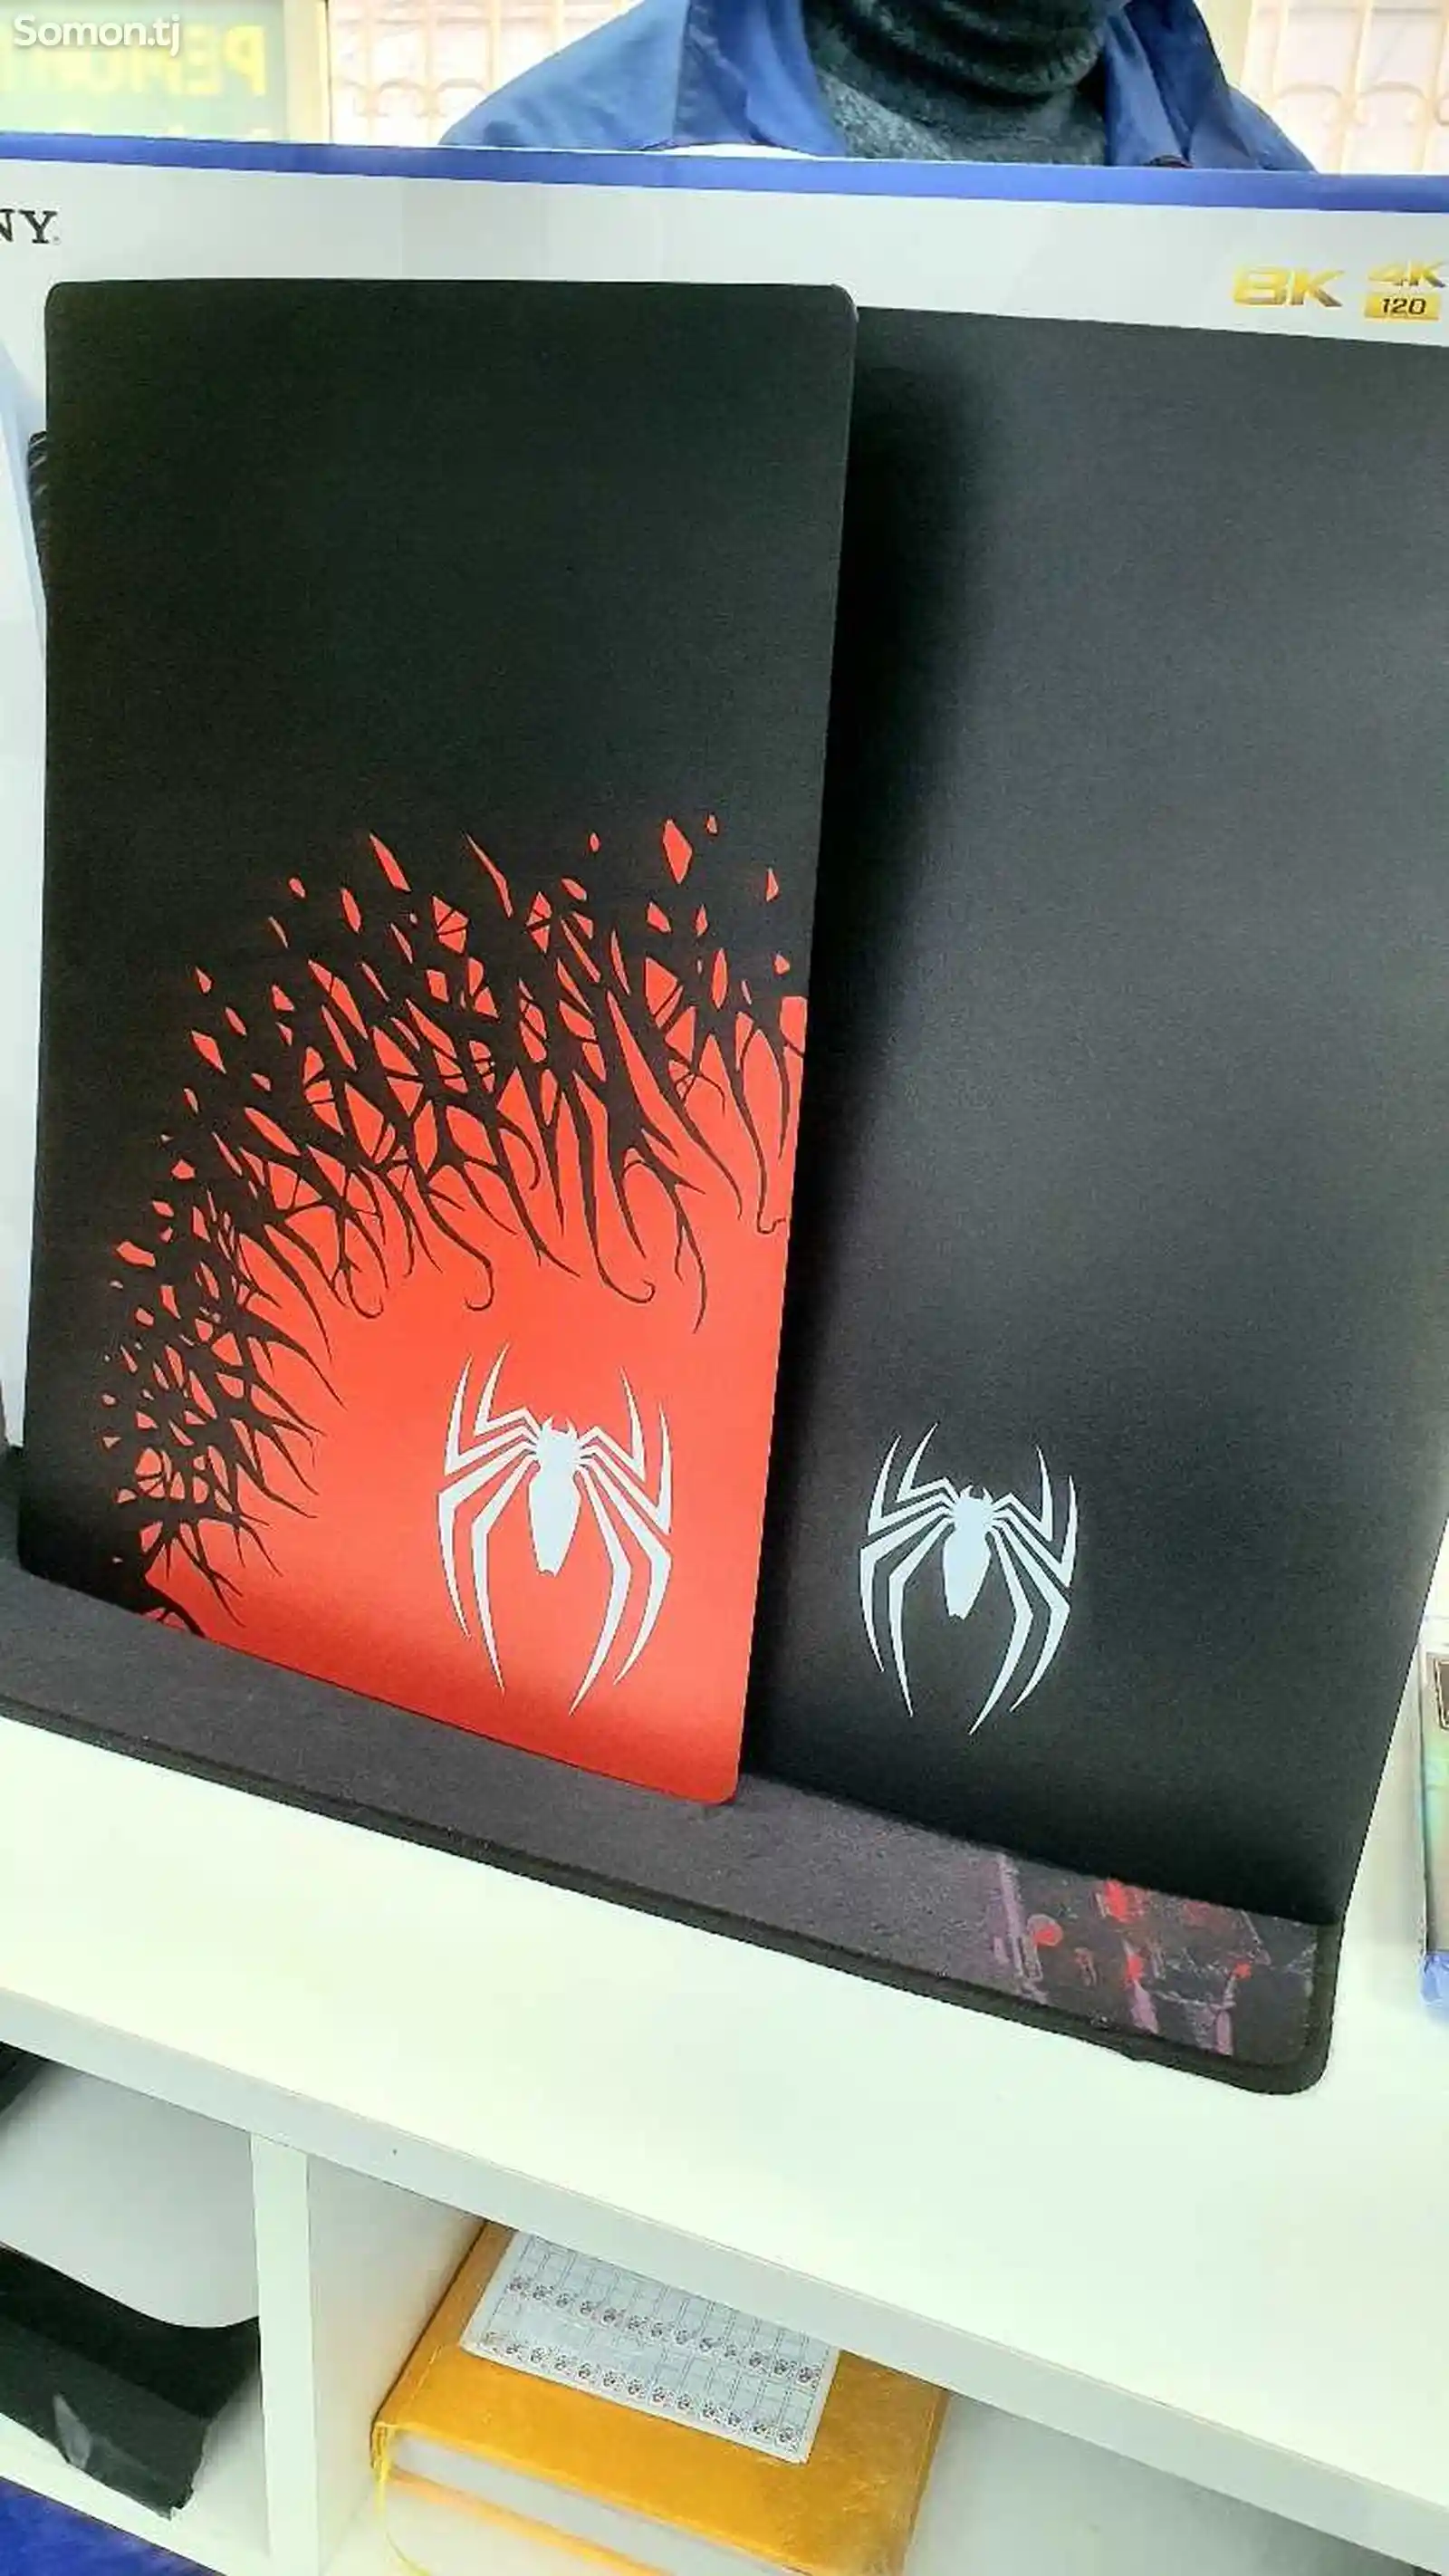 Раскрашенные Панели для консолей PS5 в стиле игры Marvels Spiderman 2-3